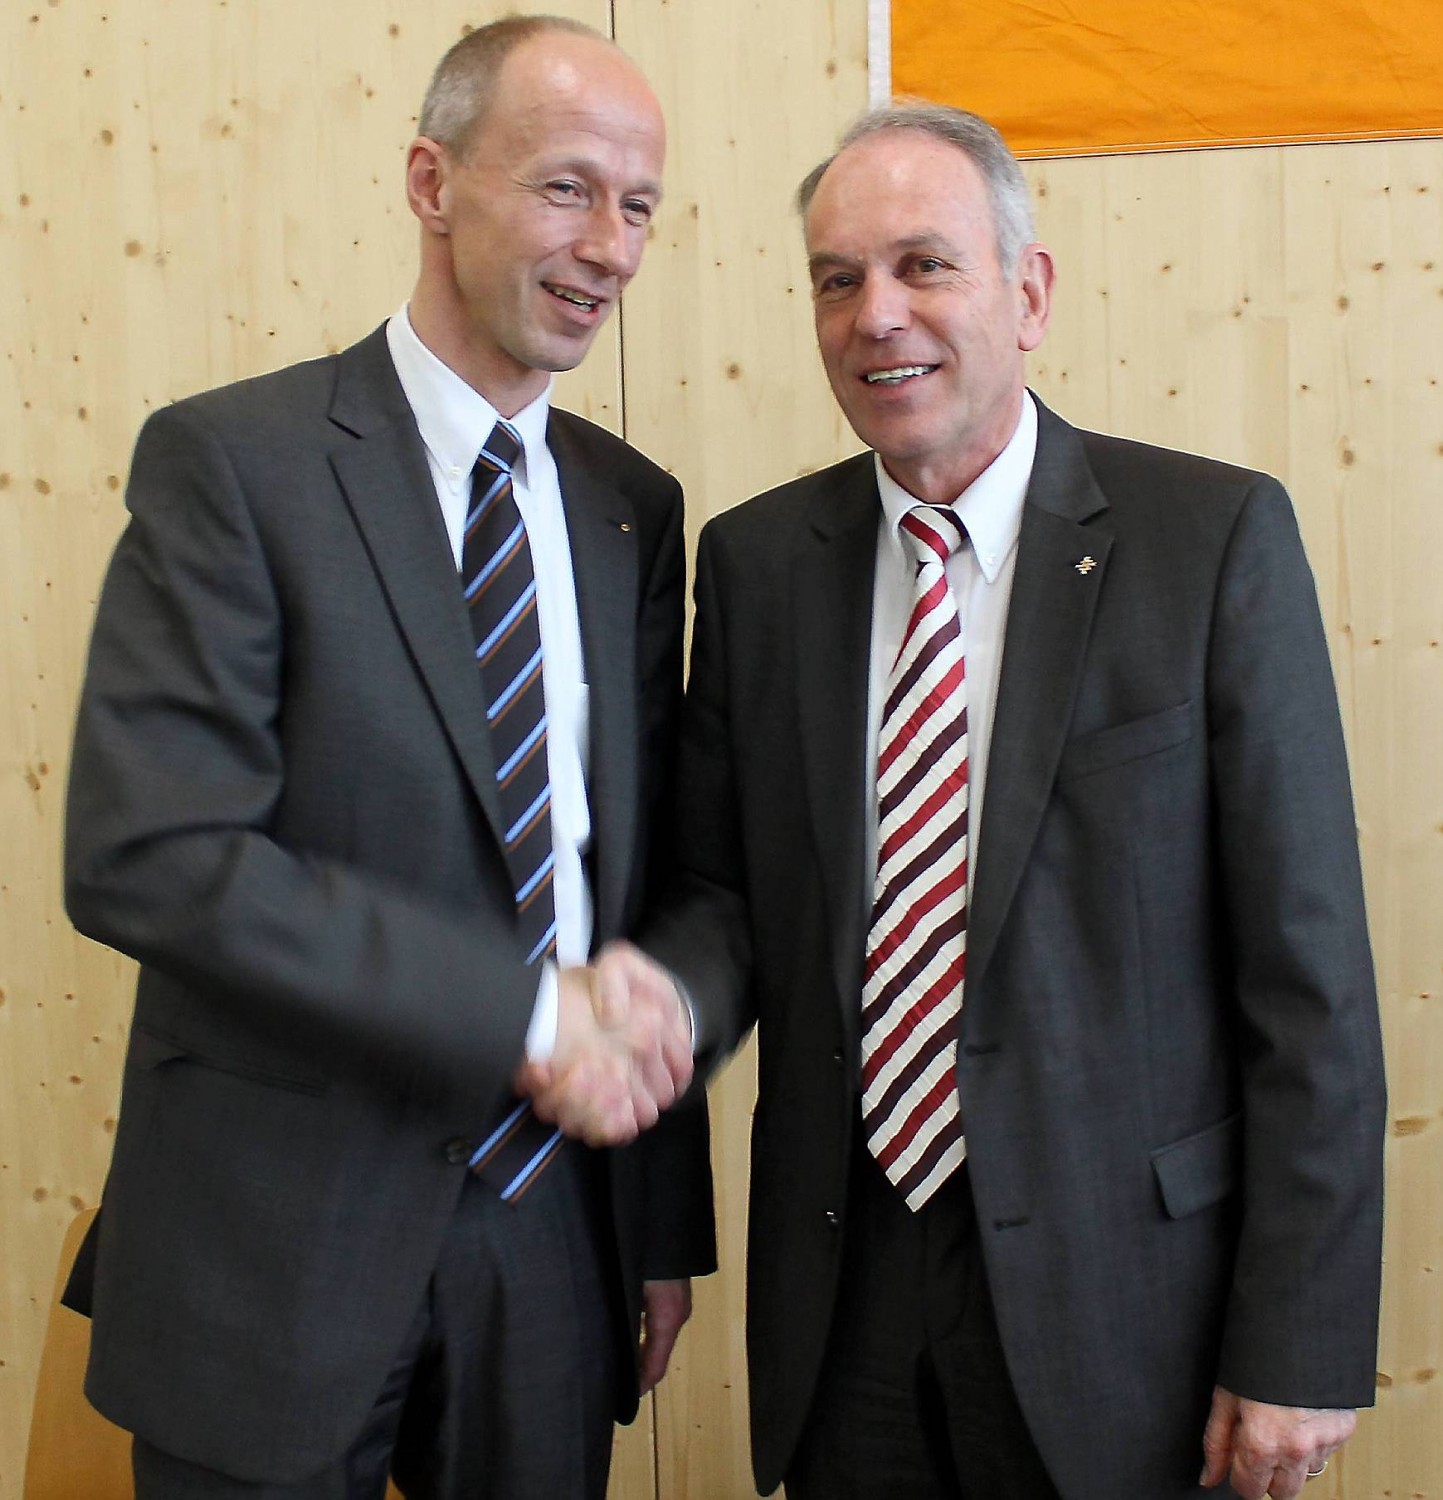 CDU Kreisparteitag in Goddelsheim - Armin Schwarz zum neuen Kreisvorsitzenden gewählt